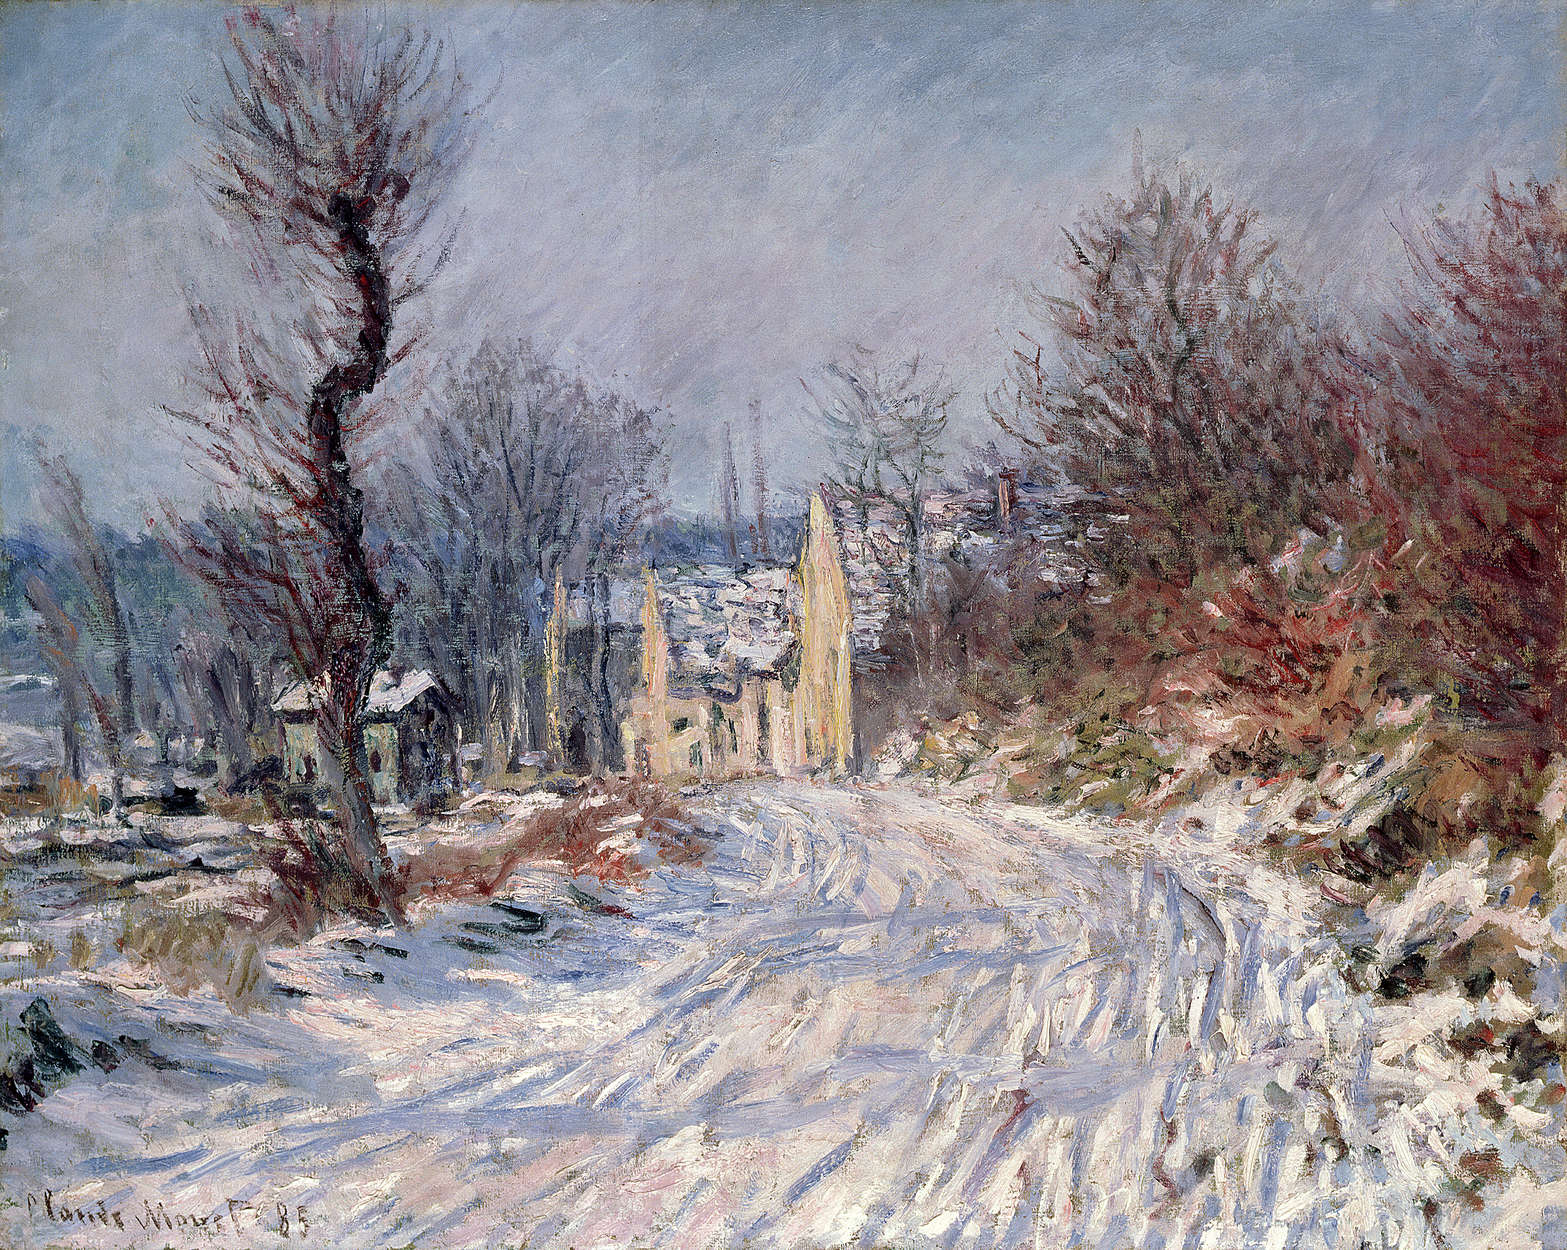             Fototapete "Die Straße nach Giverny" von Claude Monet
        